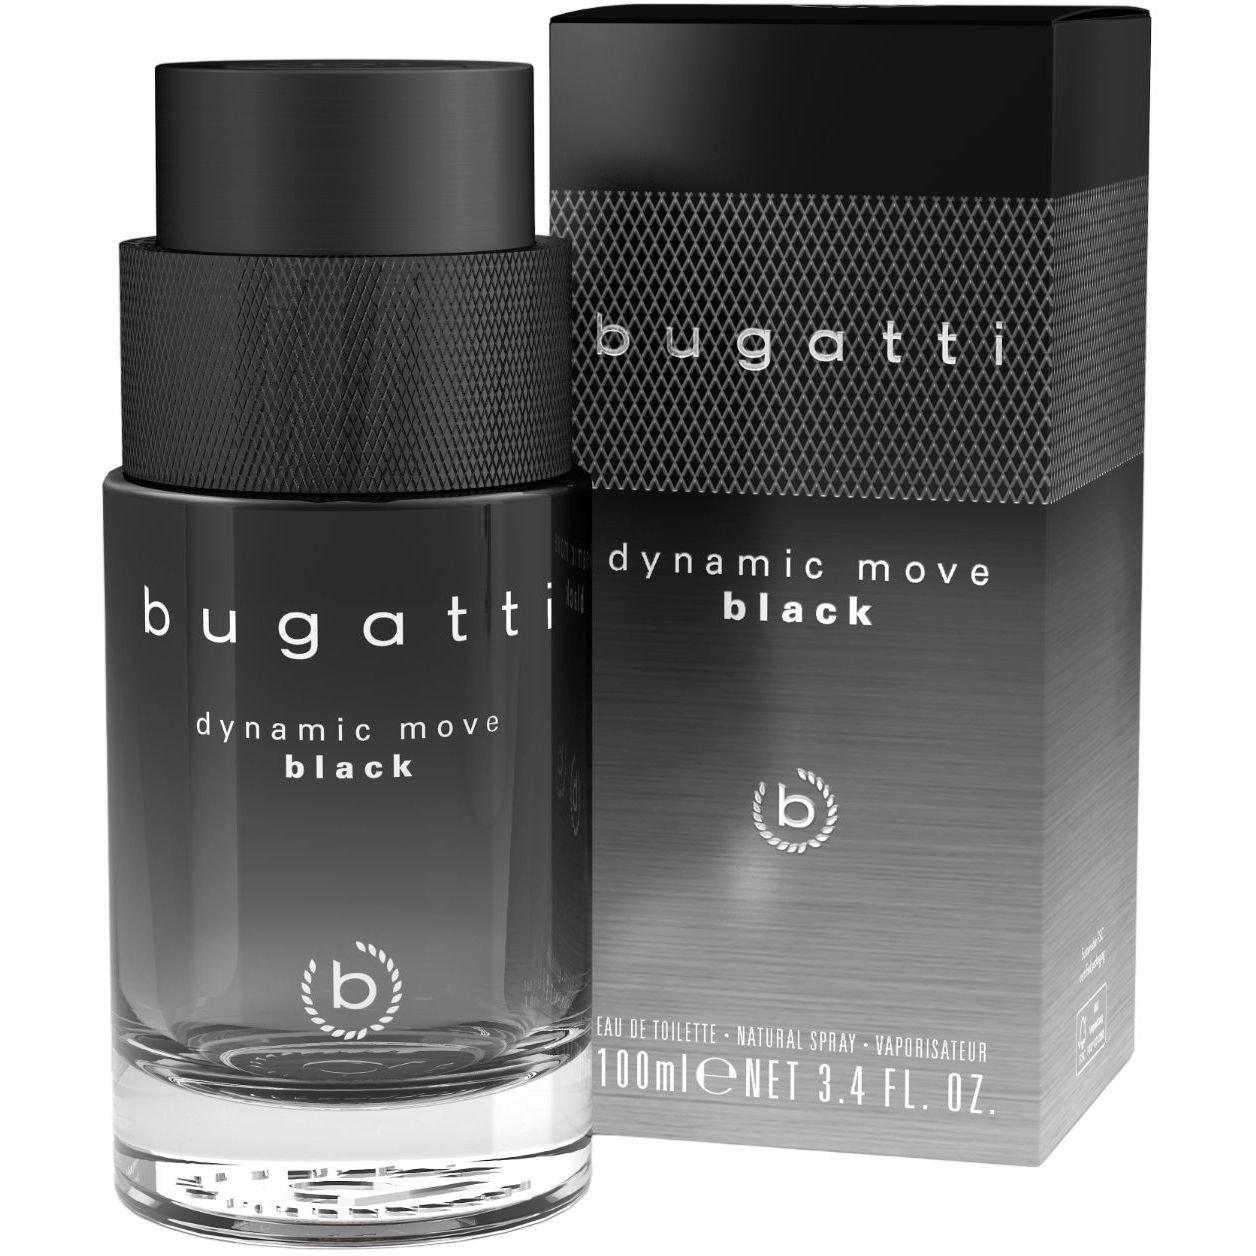 Туалетная вода для мужчин Bugatti Dynamice Move black 100 мл - фото 1